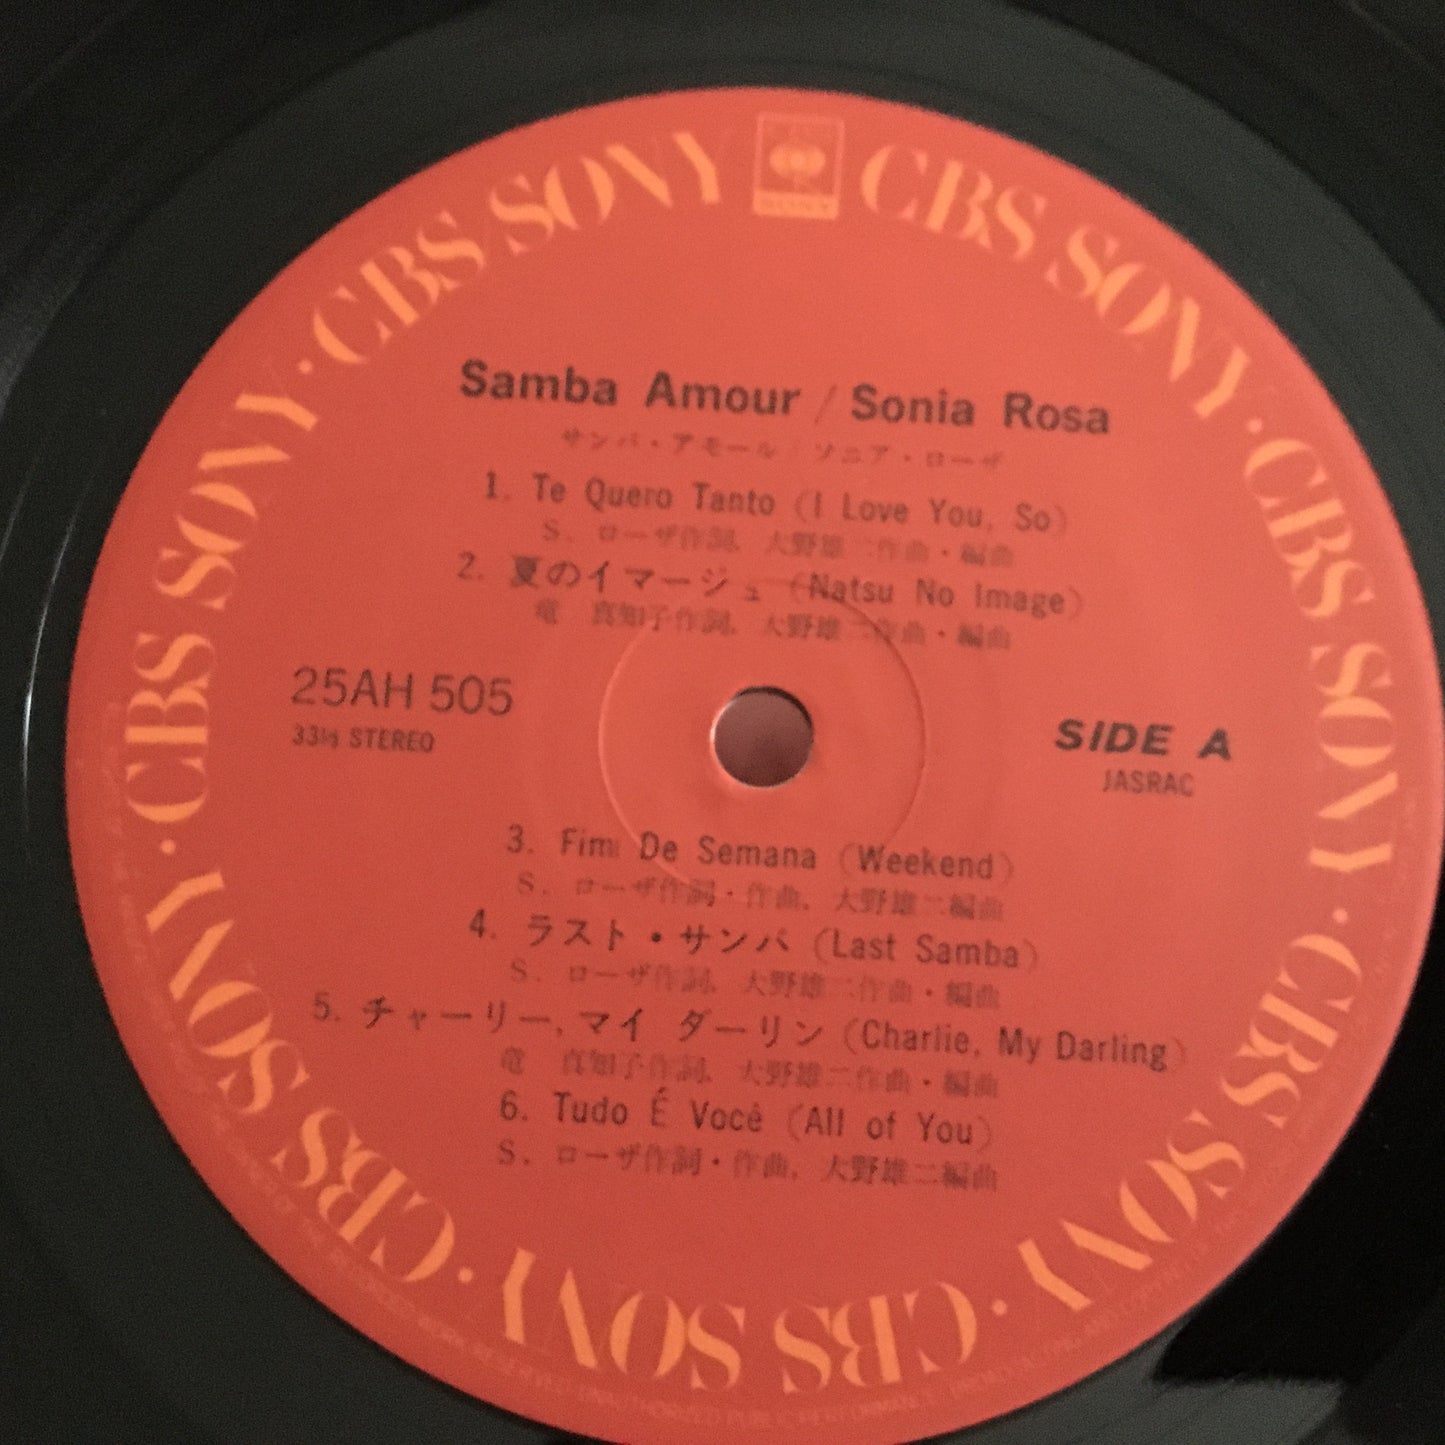 Sonia Rosa ソニア・ローザ – Samba Amour サンバ・アモール